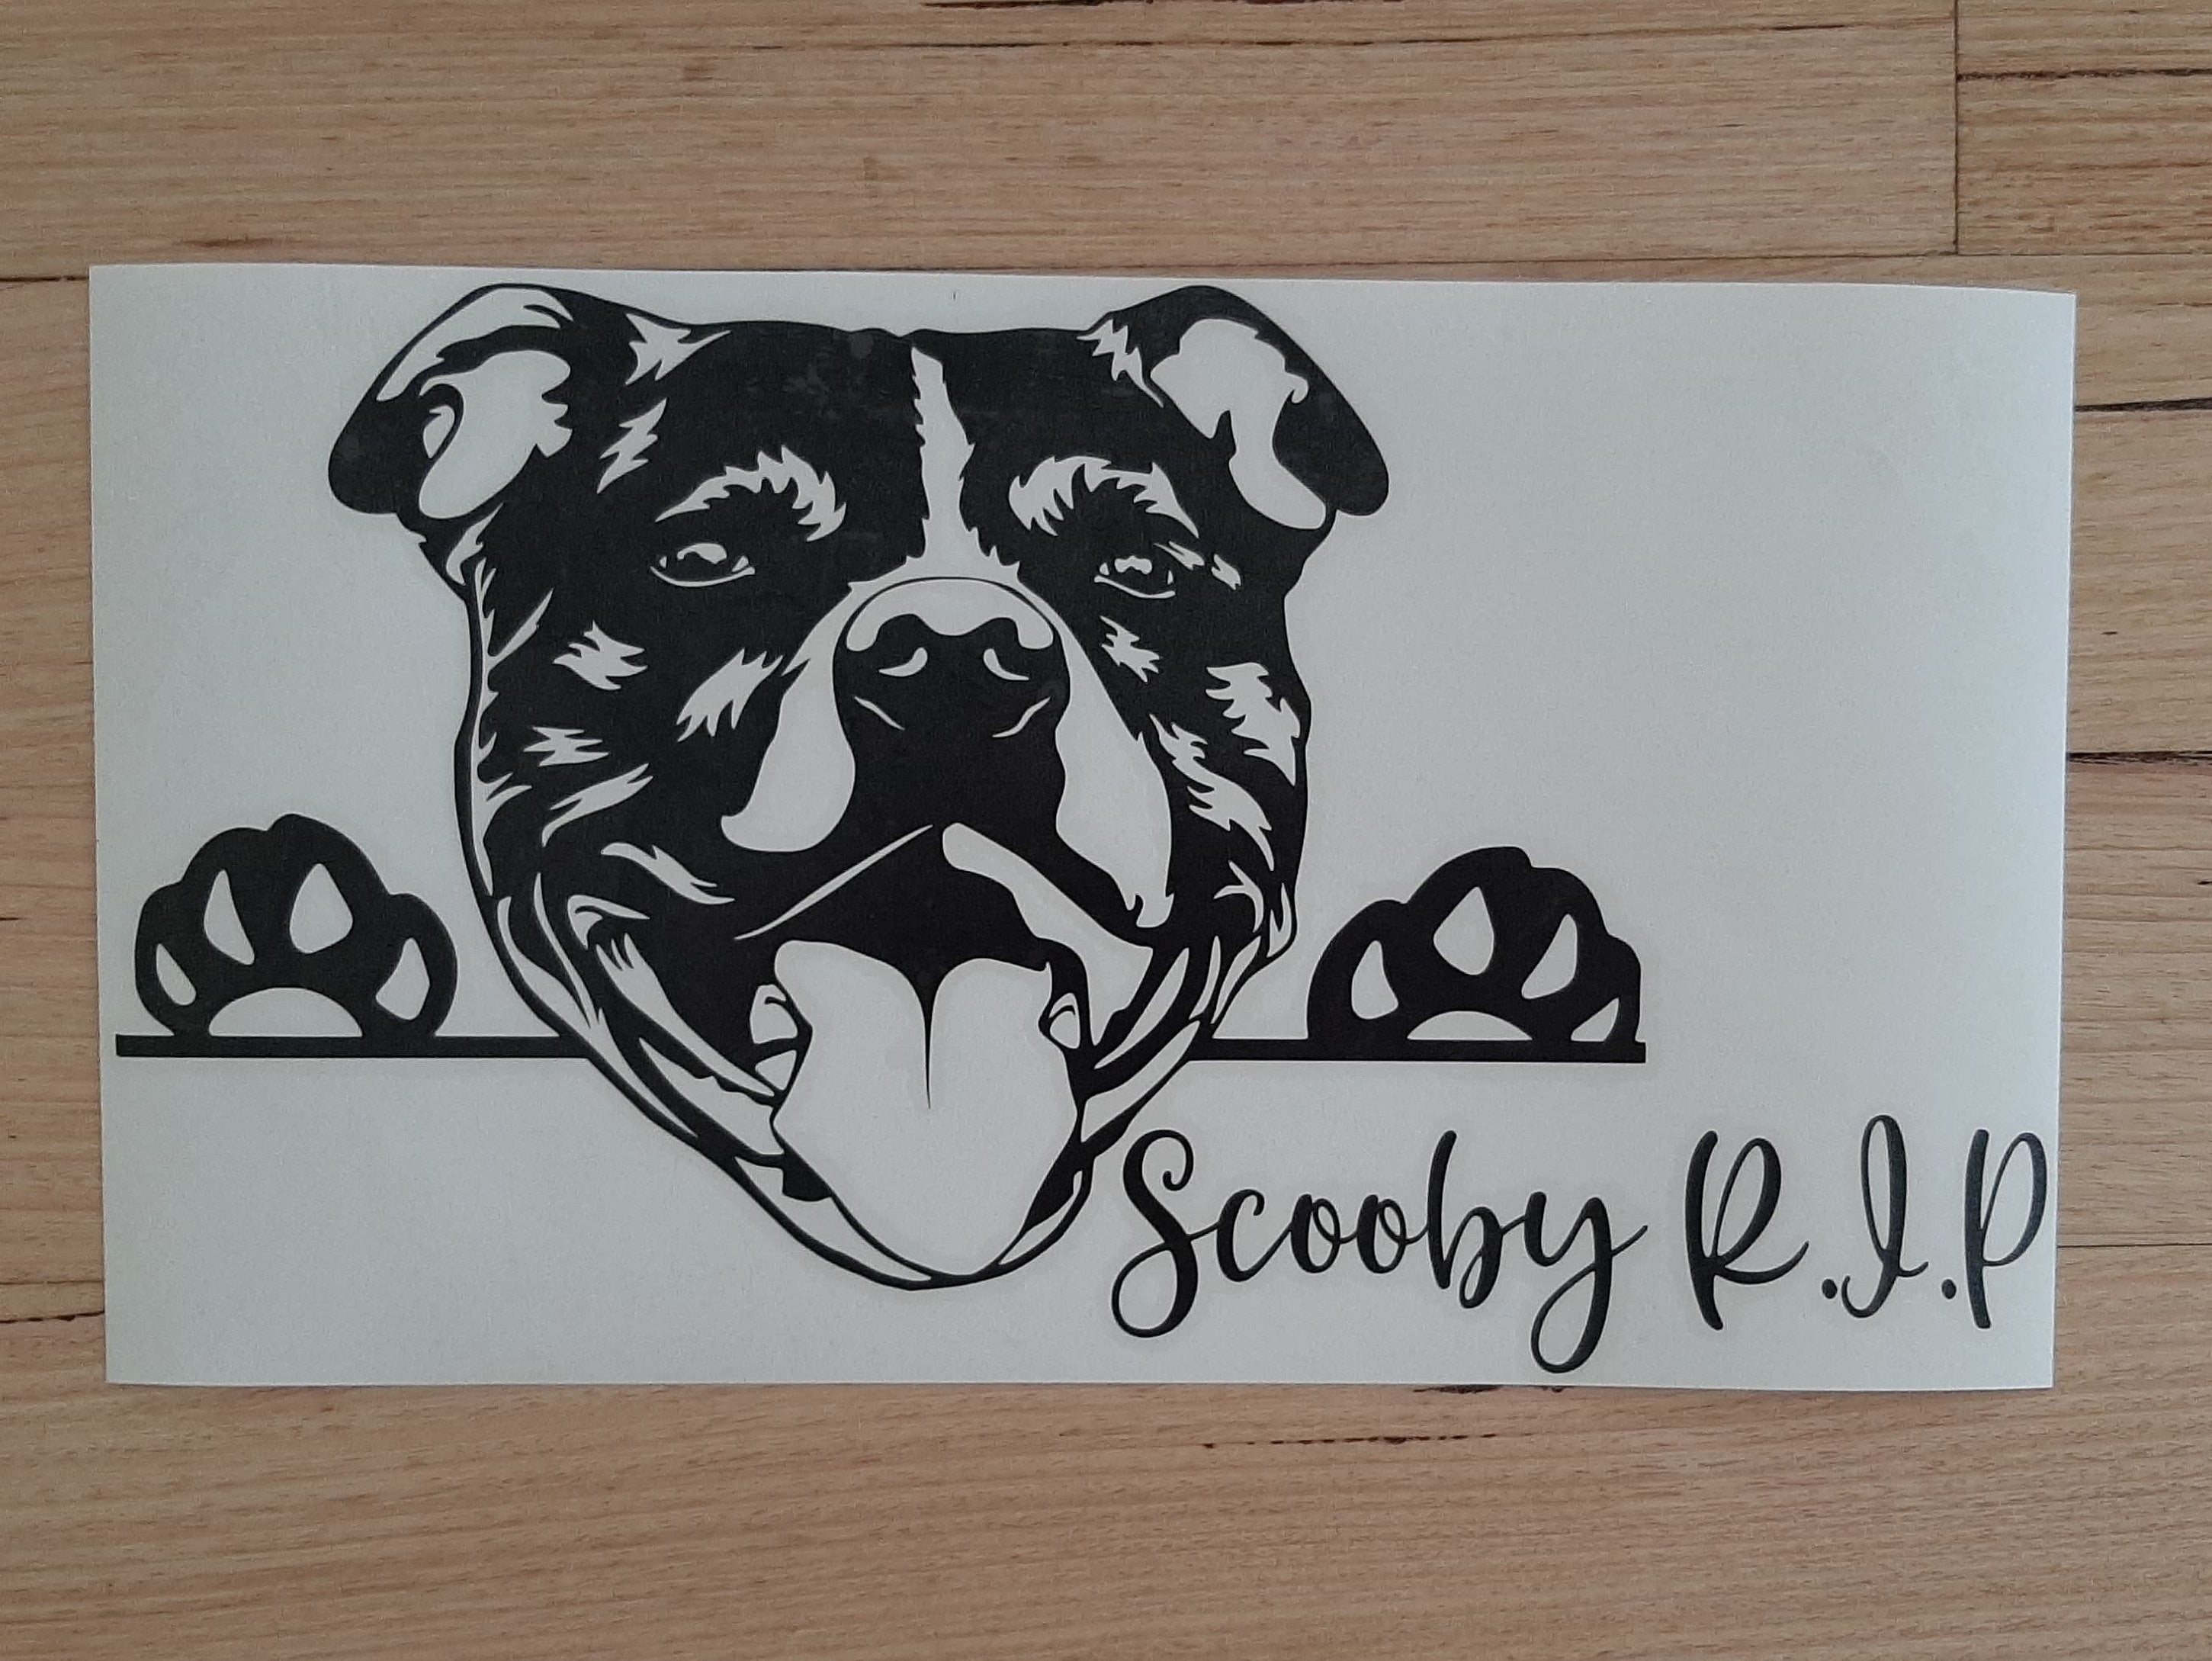 Peeking Staffy Car Sticker. Staffordshire Bull Terrier Decal - My Crafty Dog